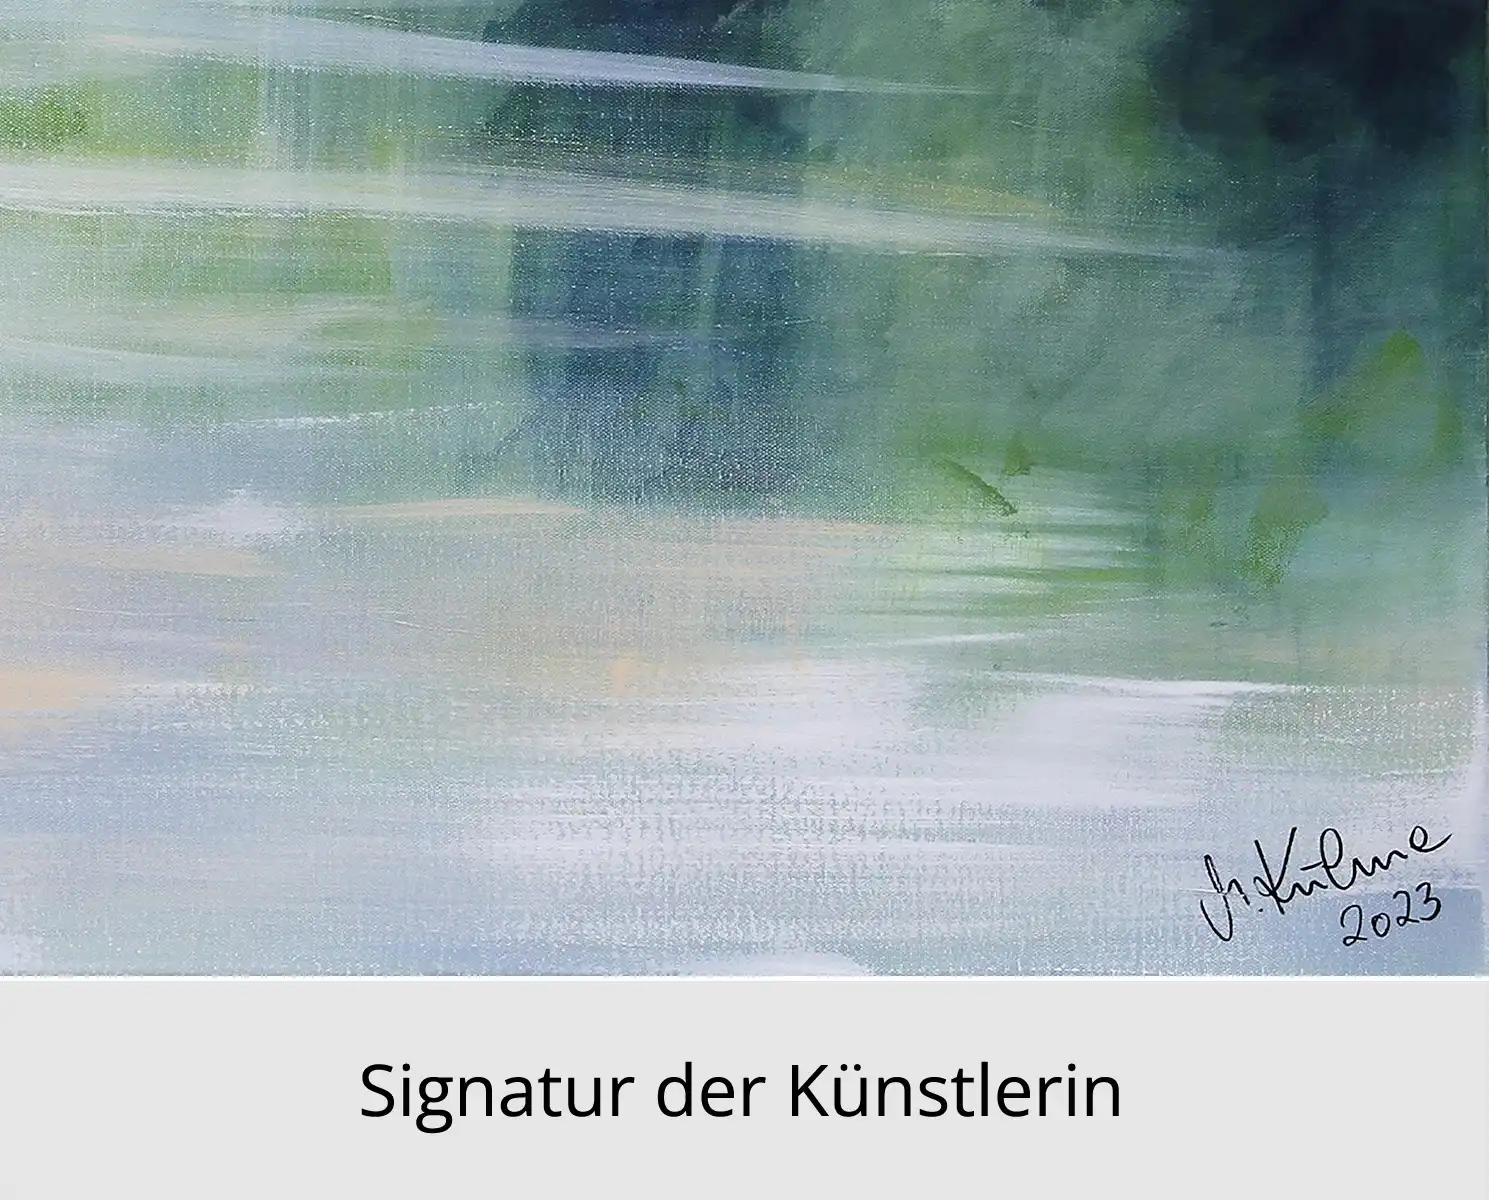 M. Kühne: "Abendleuchten", Edition, signierter Kunstdruck, Nr. 1/100